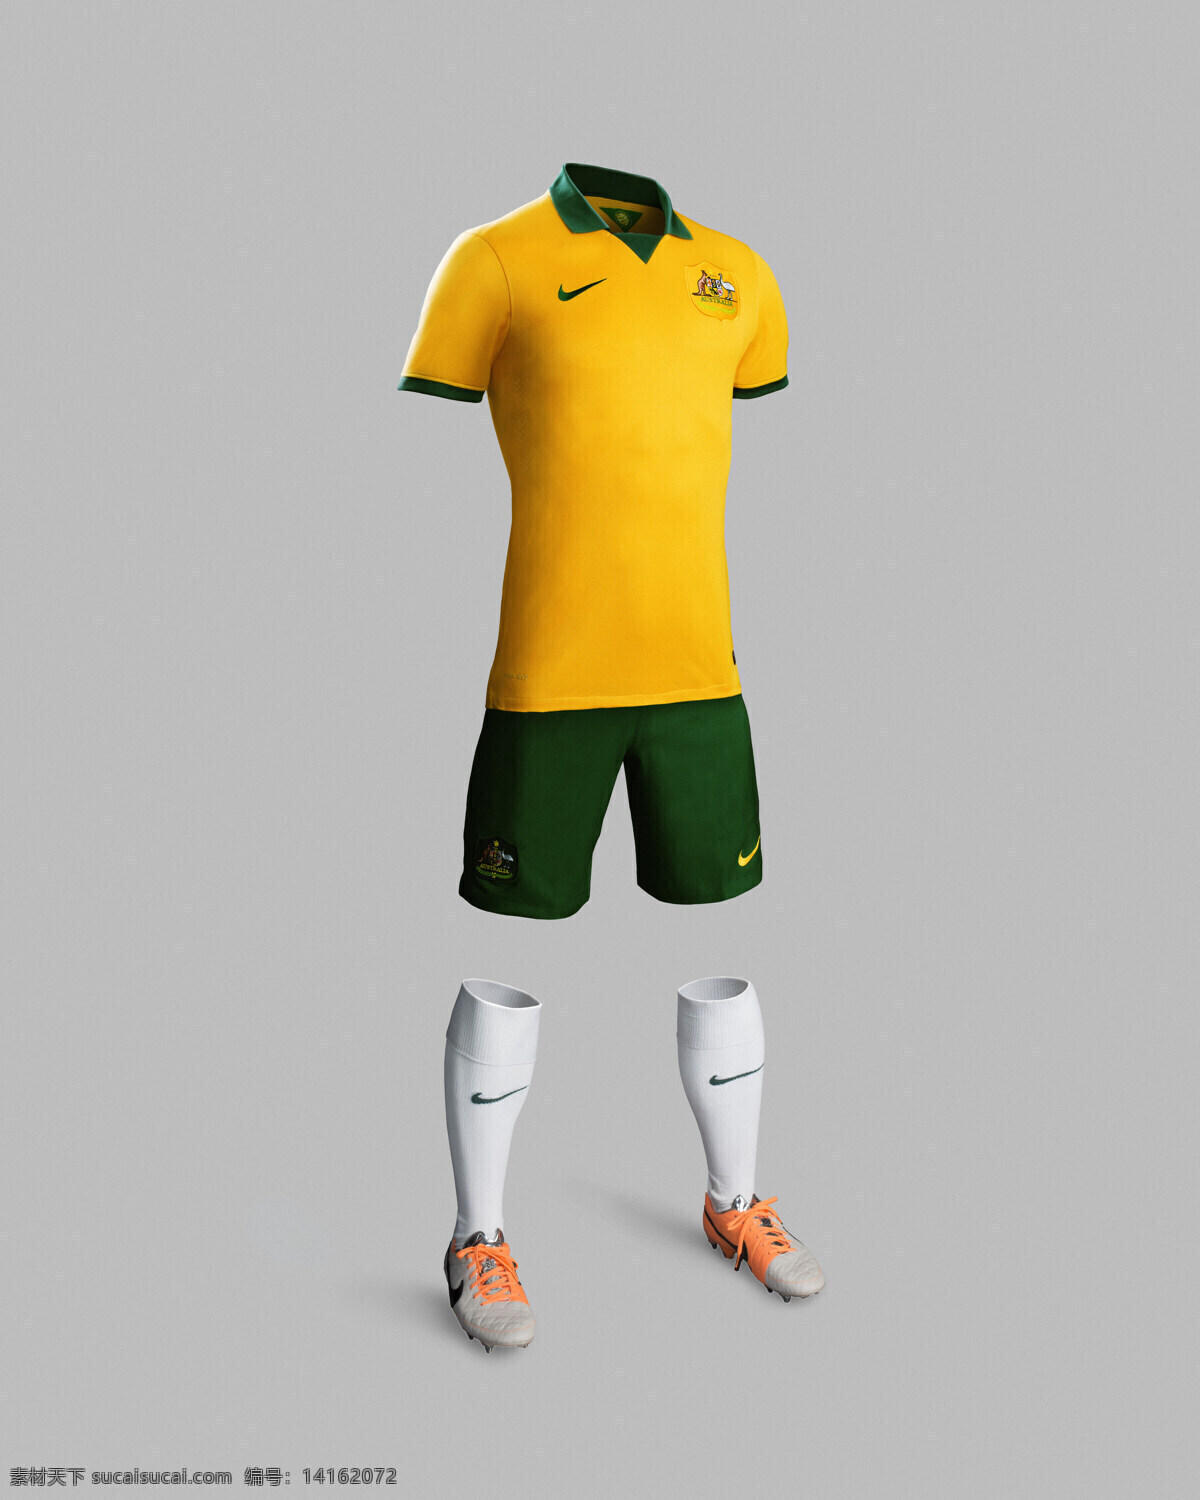 澳大利亚 国家队 队服 nike 足球 宣传广告 体育运动 文化艺术